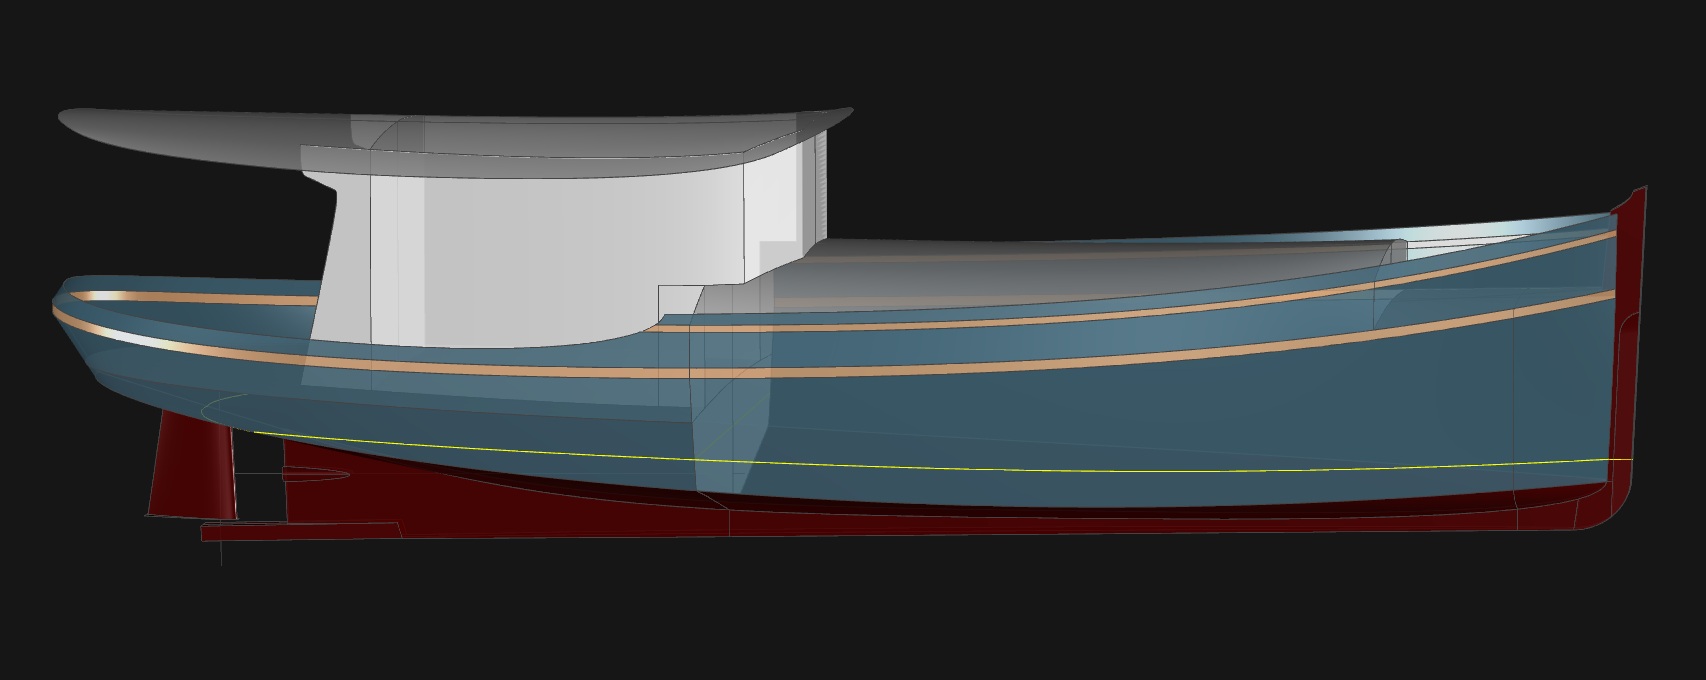 43' Dream Yacht - MOXIE - Kasten Marine Design, Inc.